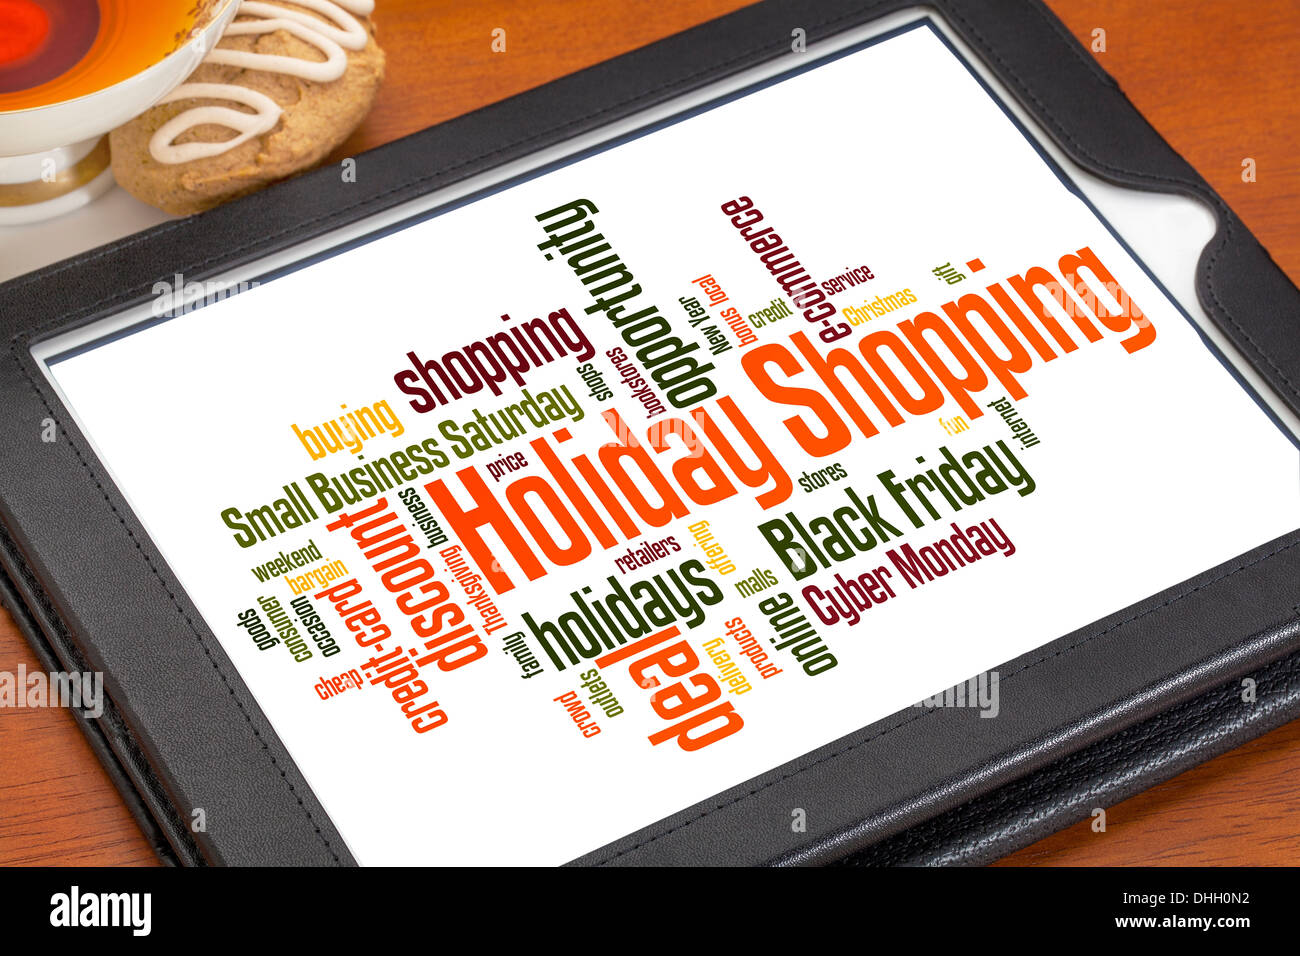 Weihnachtseinkäufe Wortwolke auf digitale Tablett mit einer Tasse Tee und Cookies Stockfoto